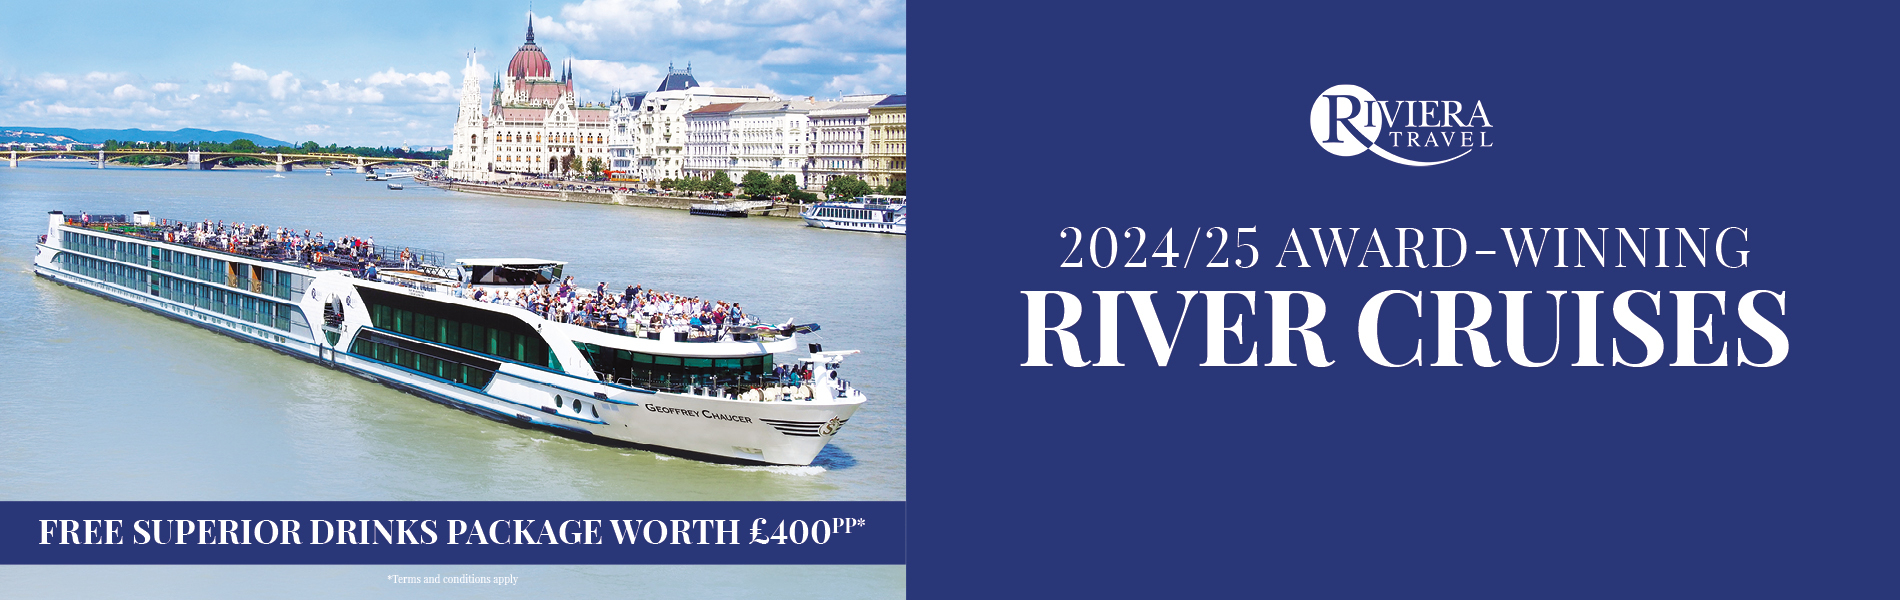 Riviera Travel River Cruises Campaign